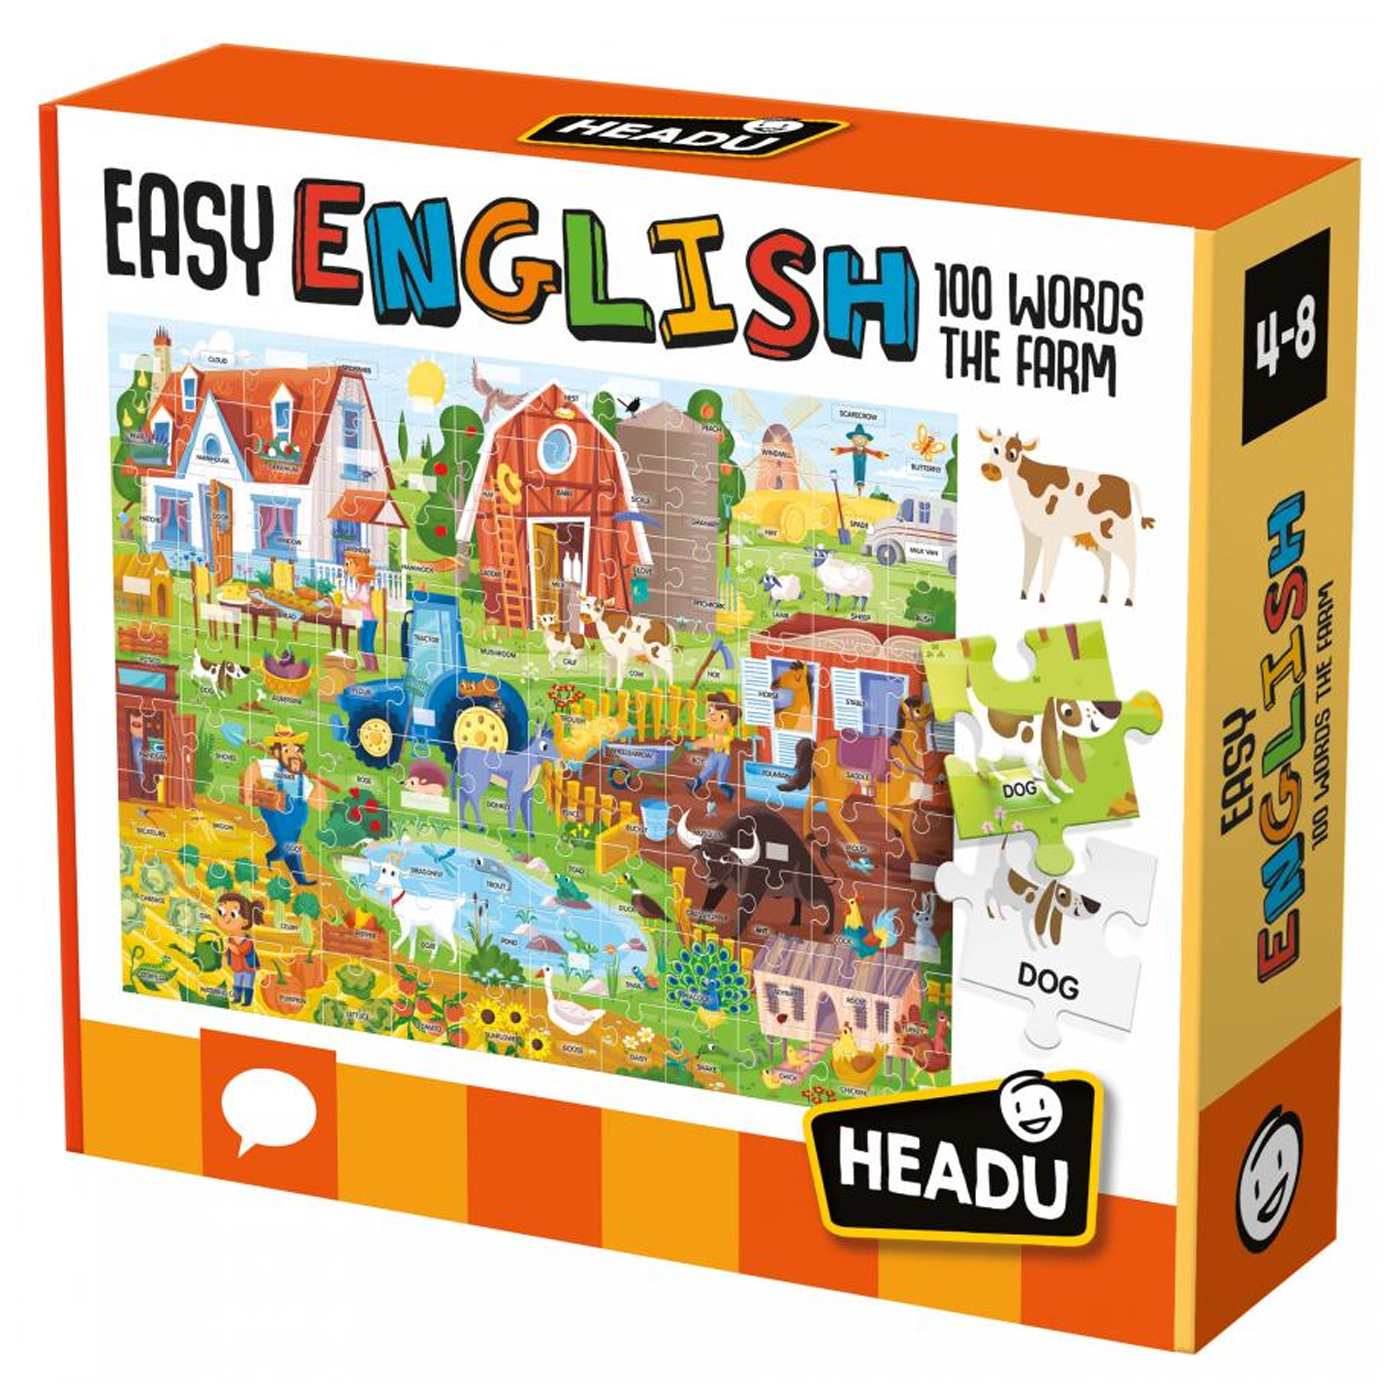  Headu Easy English 100 Words The Farm